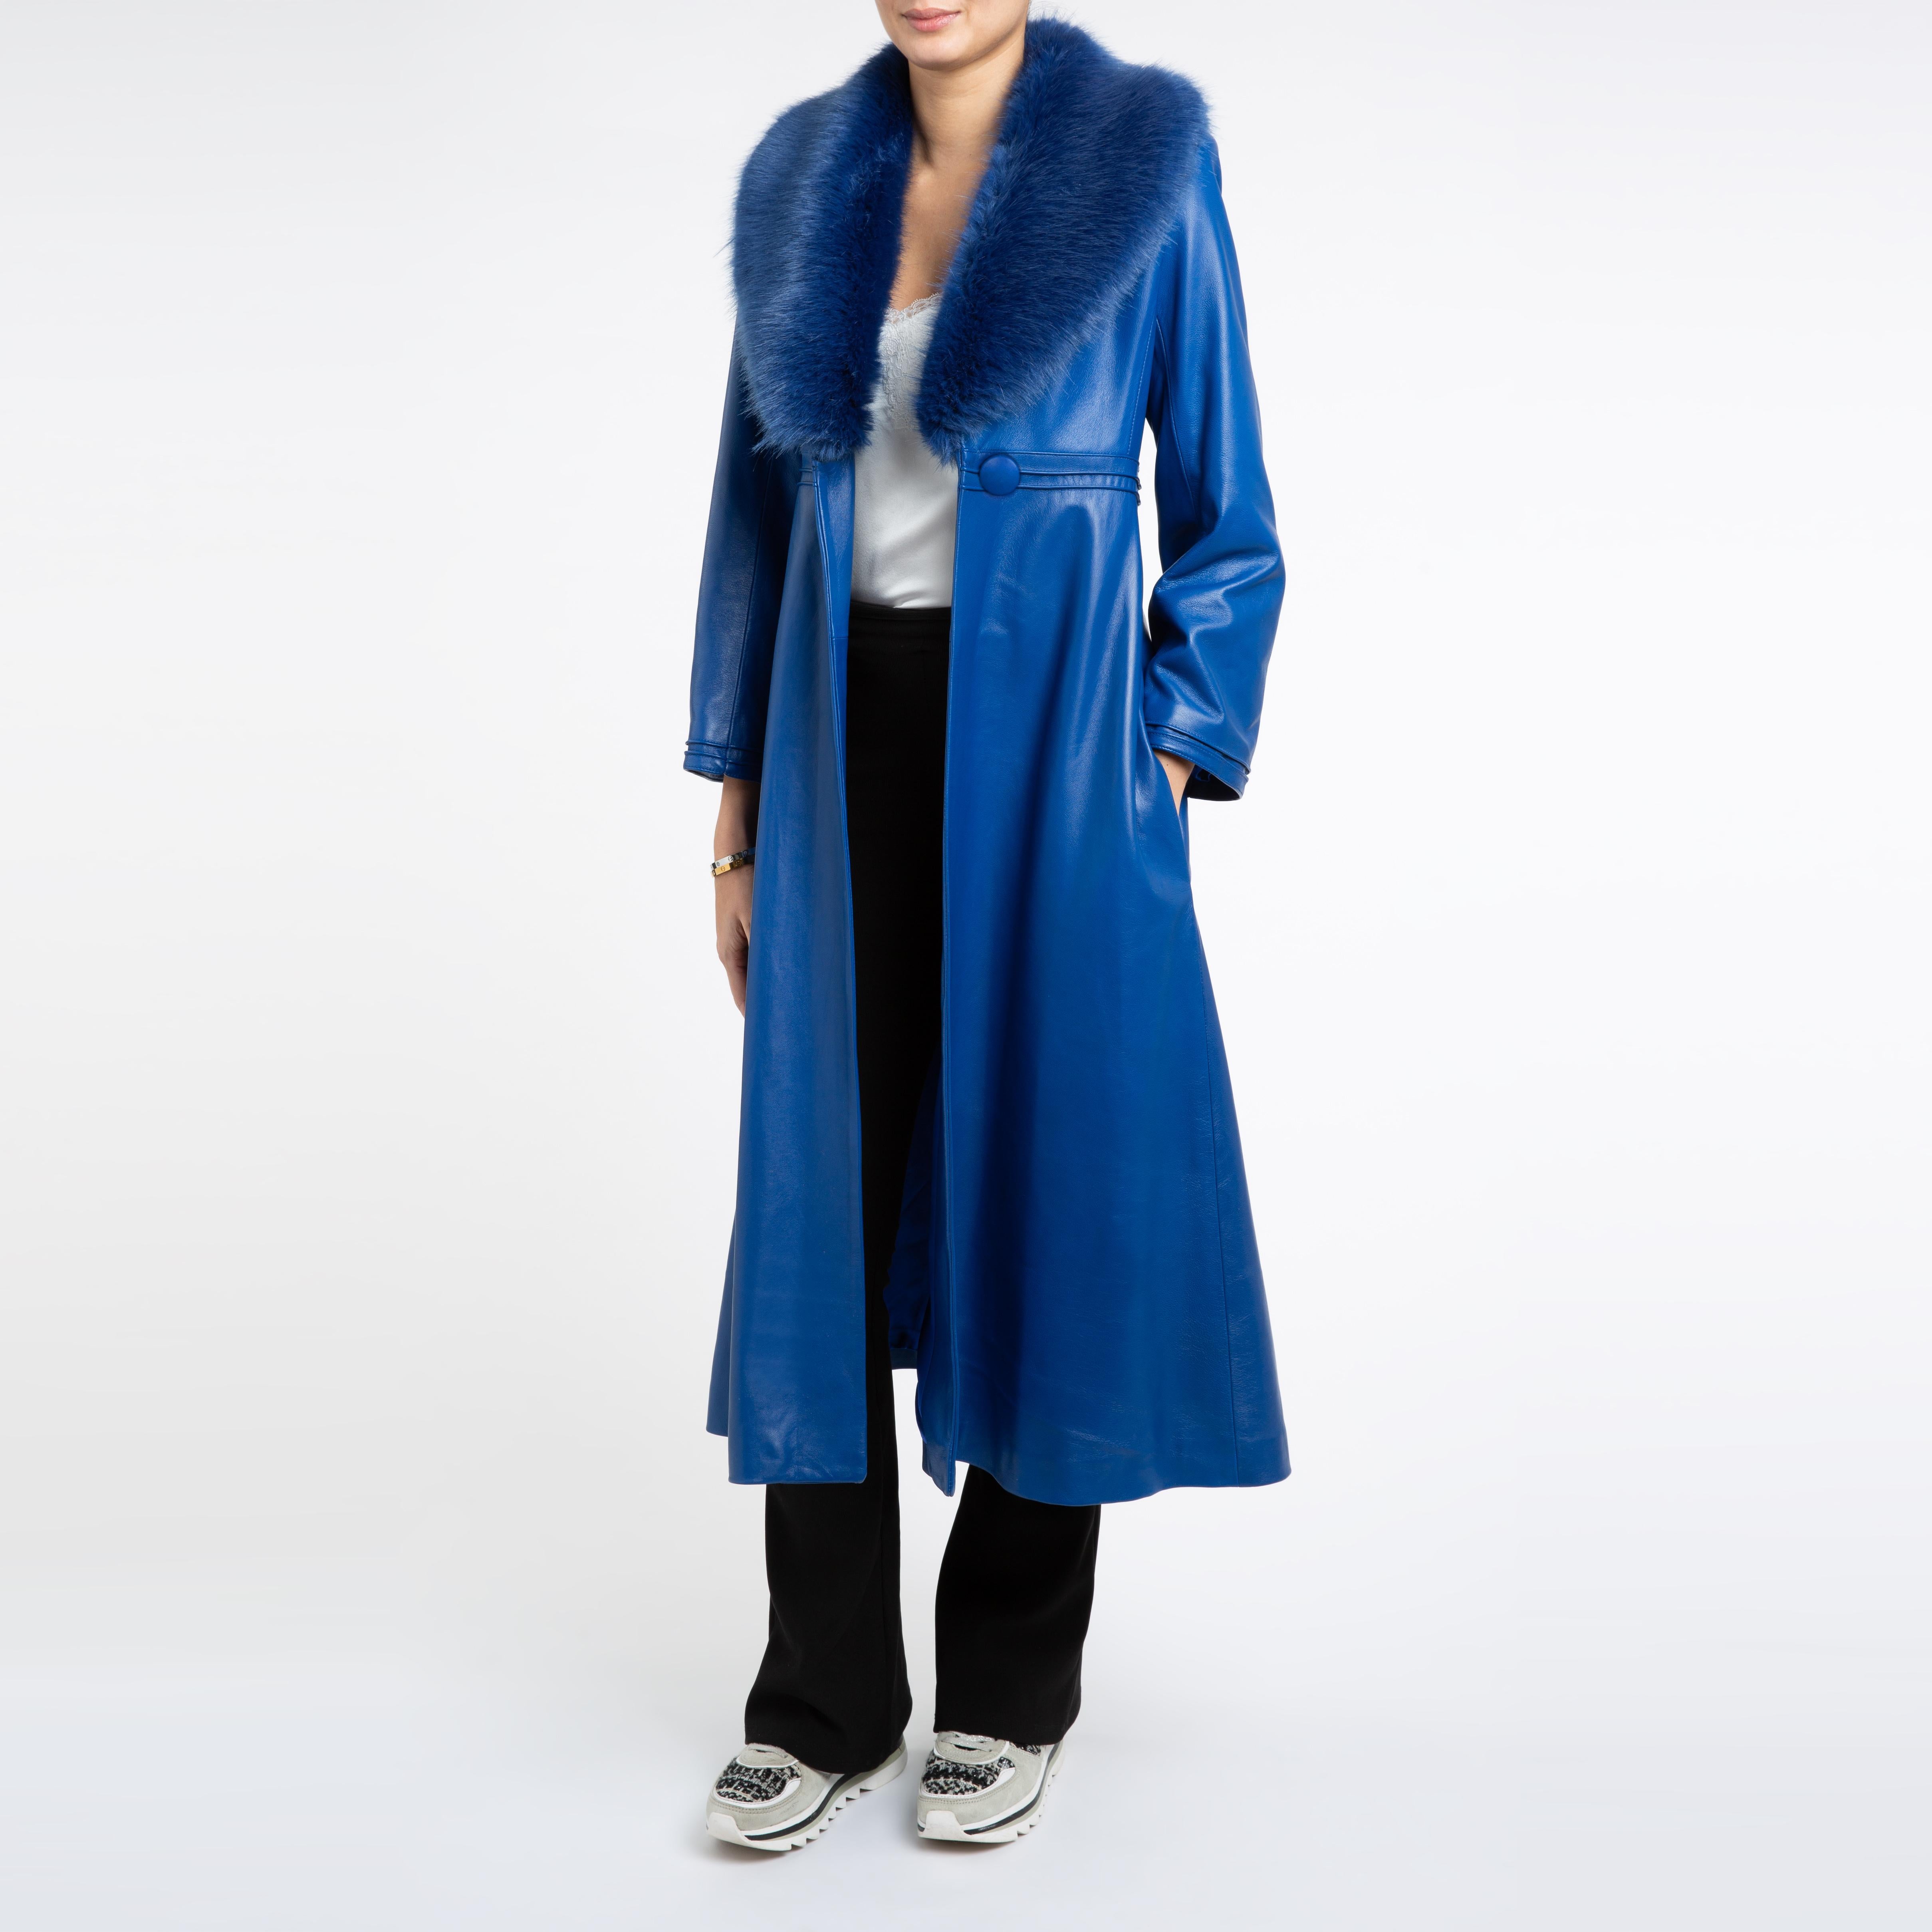 Verheyen London Edward Leather Coat in Blue with Faux Fur - Size uk 14 For Sale 2